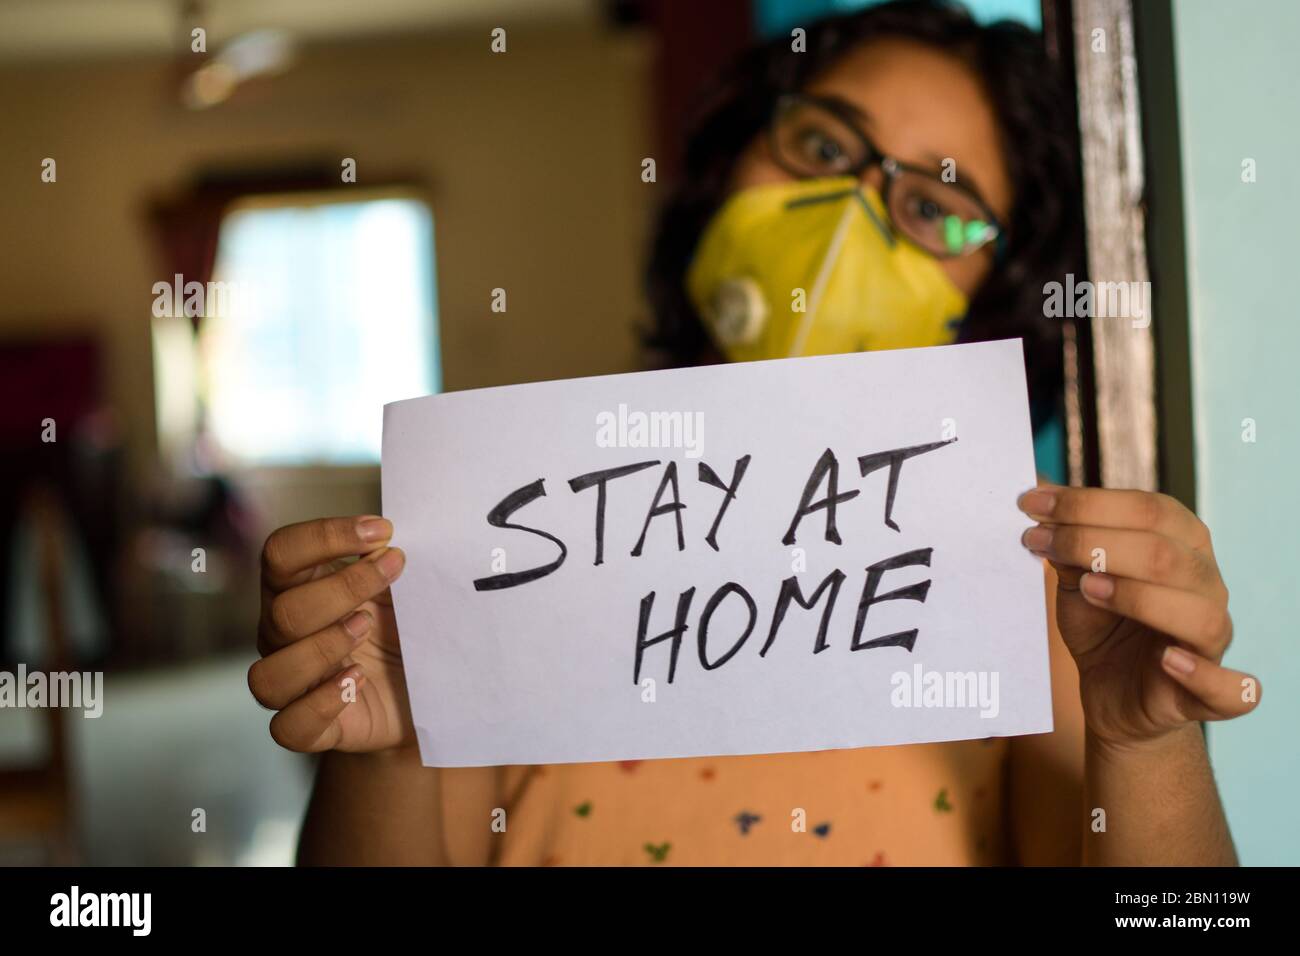 Una niña India que lleva una máscara de cara sostiene un cartel en las manos mostrando un mensaje "hay en casa" durante la pandemia de COVID-19 para mantener el distanciamiento social. Foto de stock